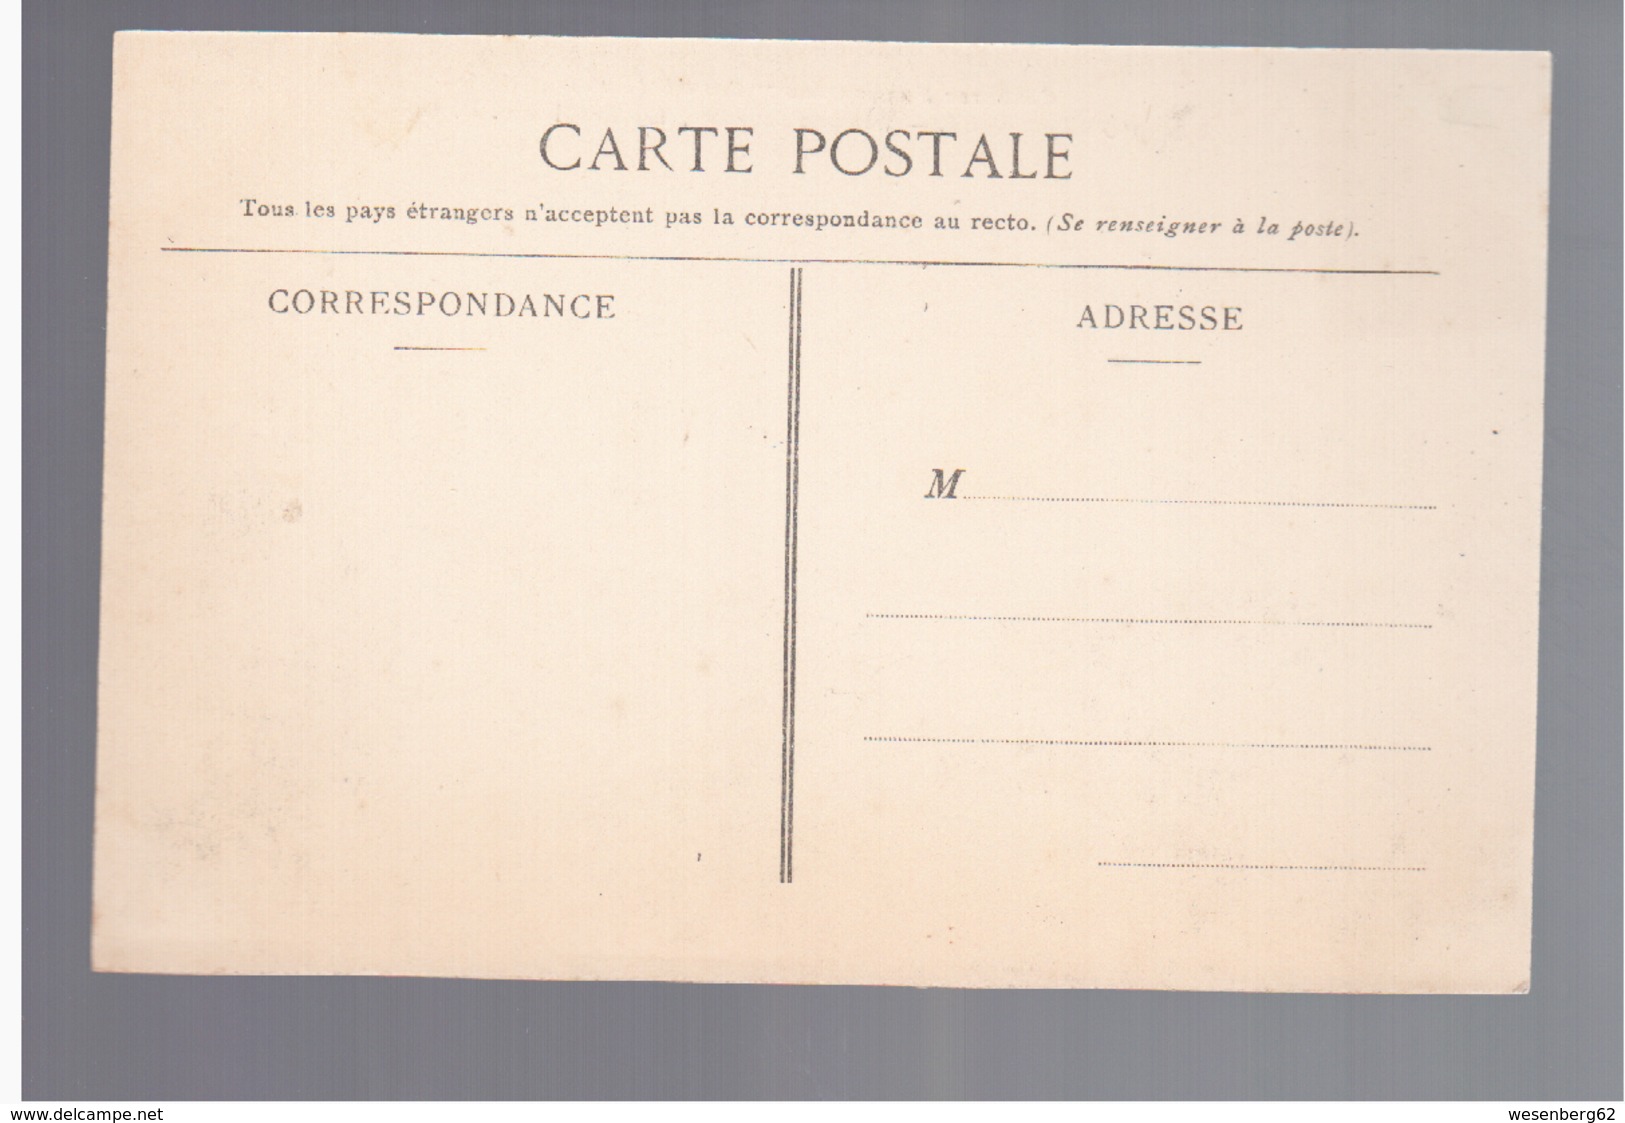 Cote D'Ivoire Port- Bouet Drague Suceuse La Tropicale Ca 1910 OLD POSTCARD - Côte-d'Ivoire